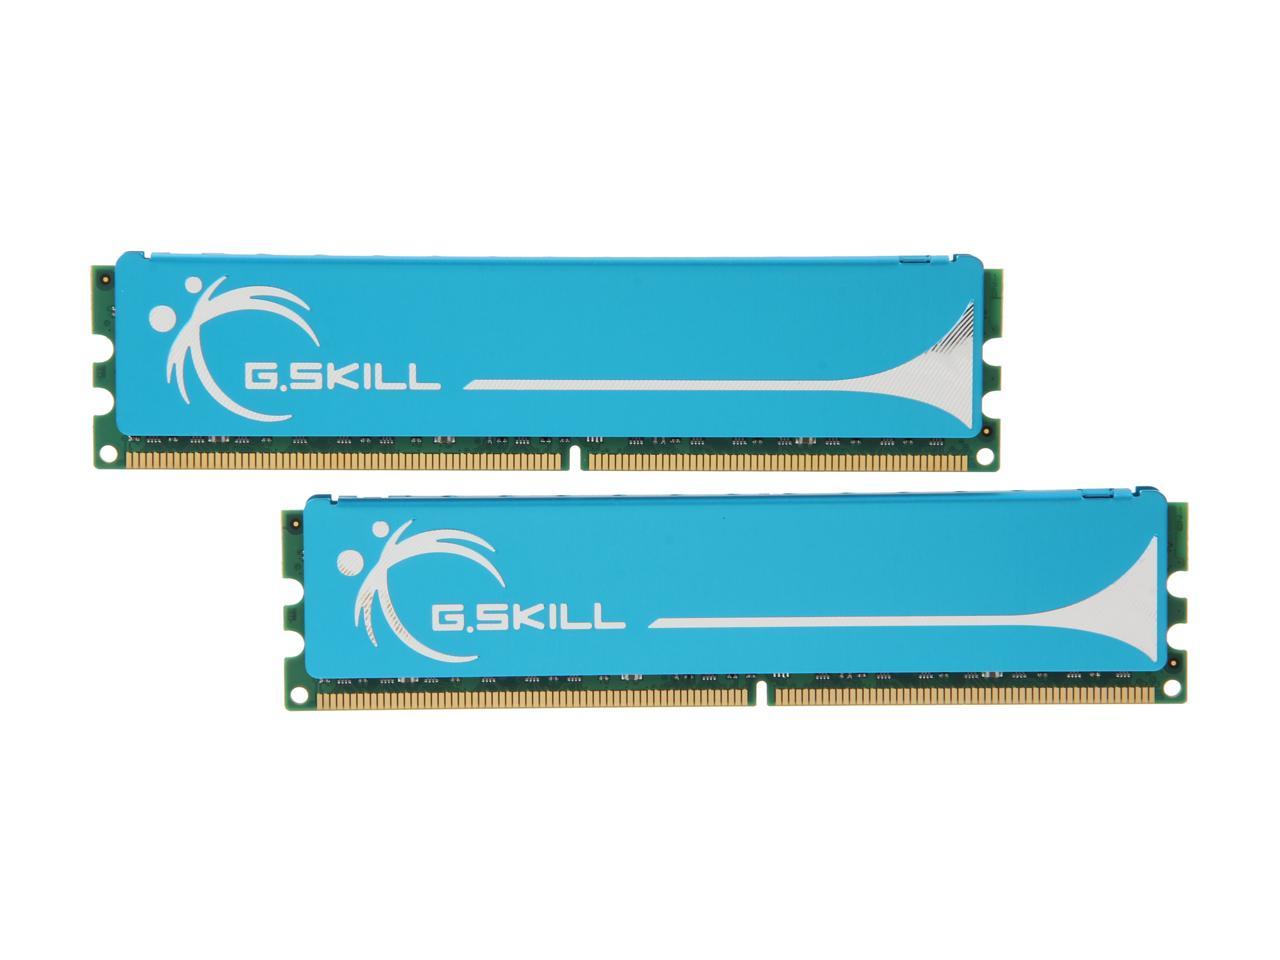 G.SKILL 4GB (2 x 2GB) 240-Pin DDR2 SDRAM DDR2 1066 (PC2 8500) Dual Channel Kit Desktop Memory Model F2-8500CL5D-4GBPK